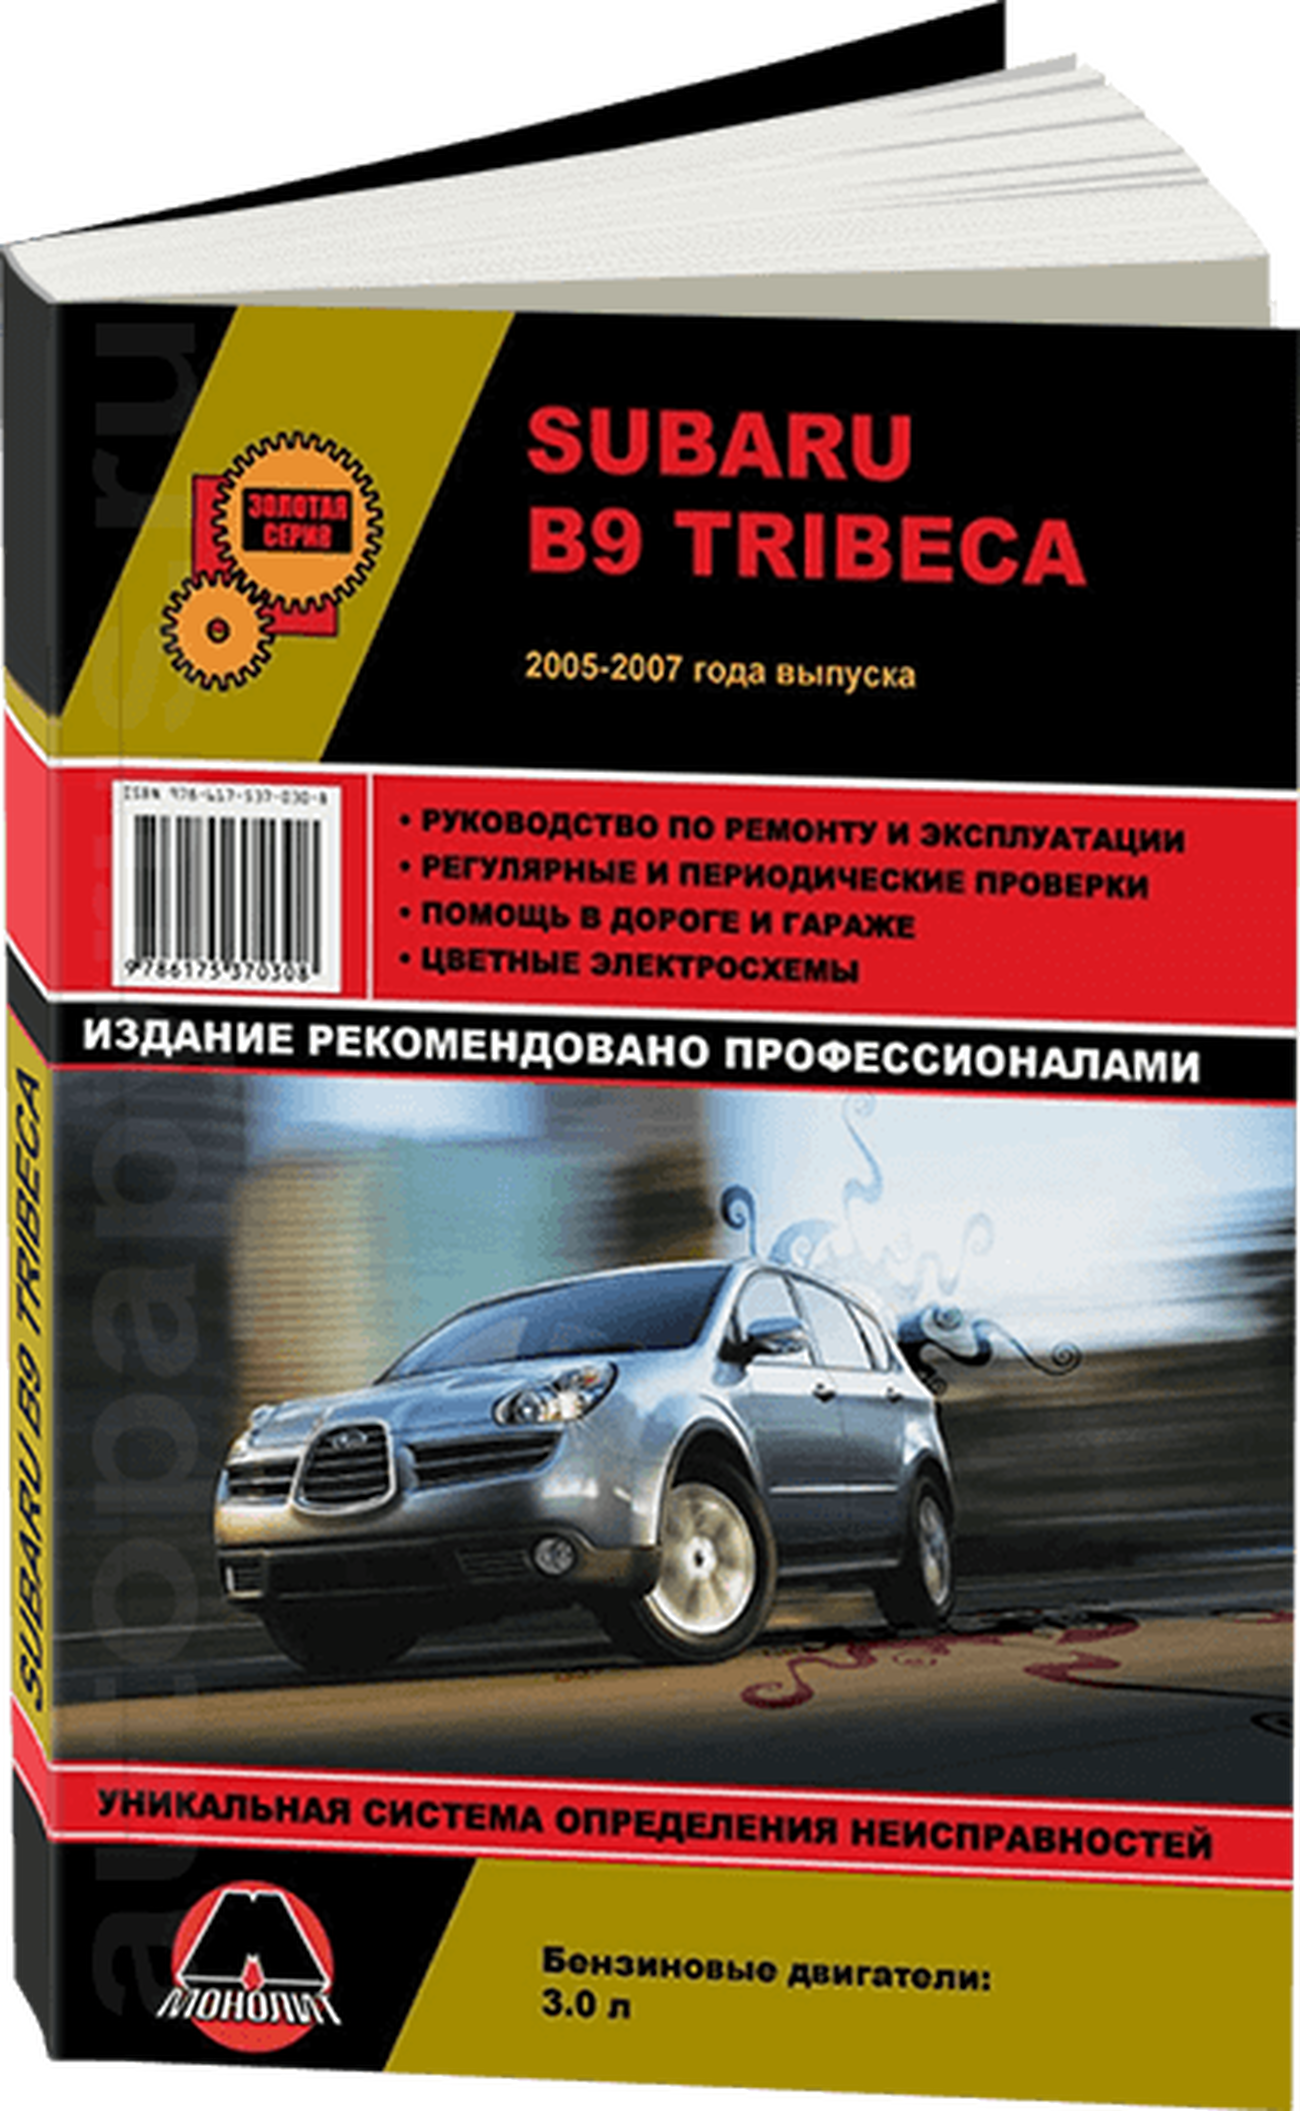 Книга: SUBARU TRIBECA B9 (б) 2005-2007 г.в., рем., экспл., то, сер. ЗС | Монолит